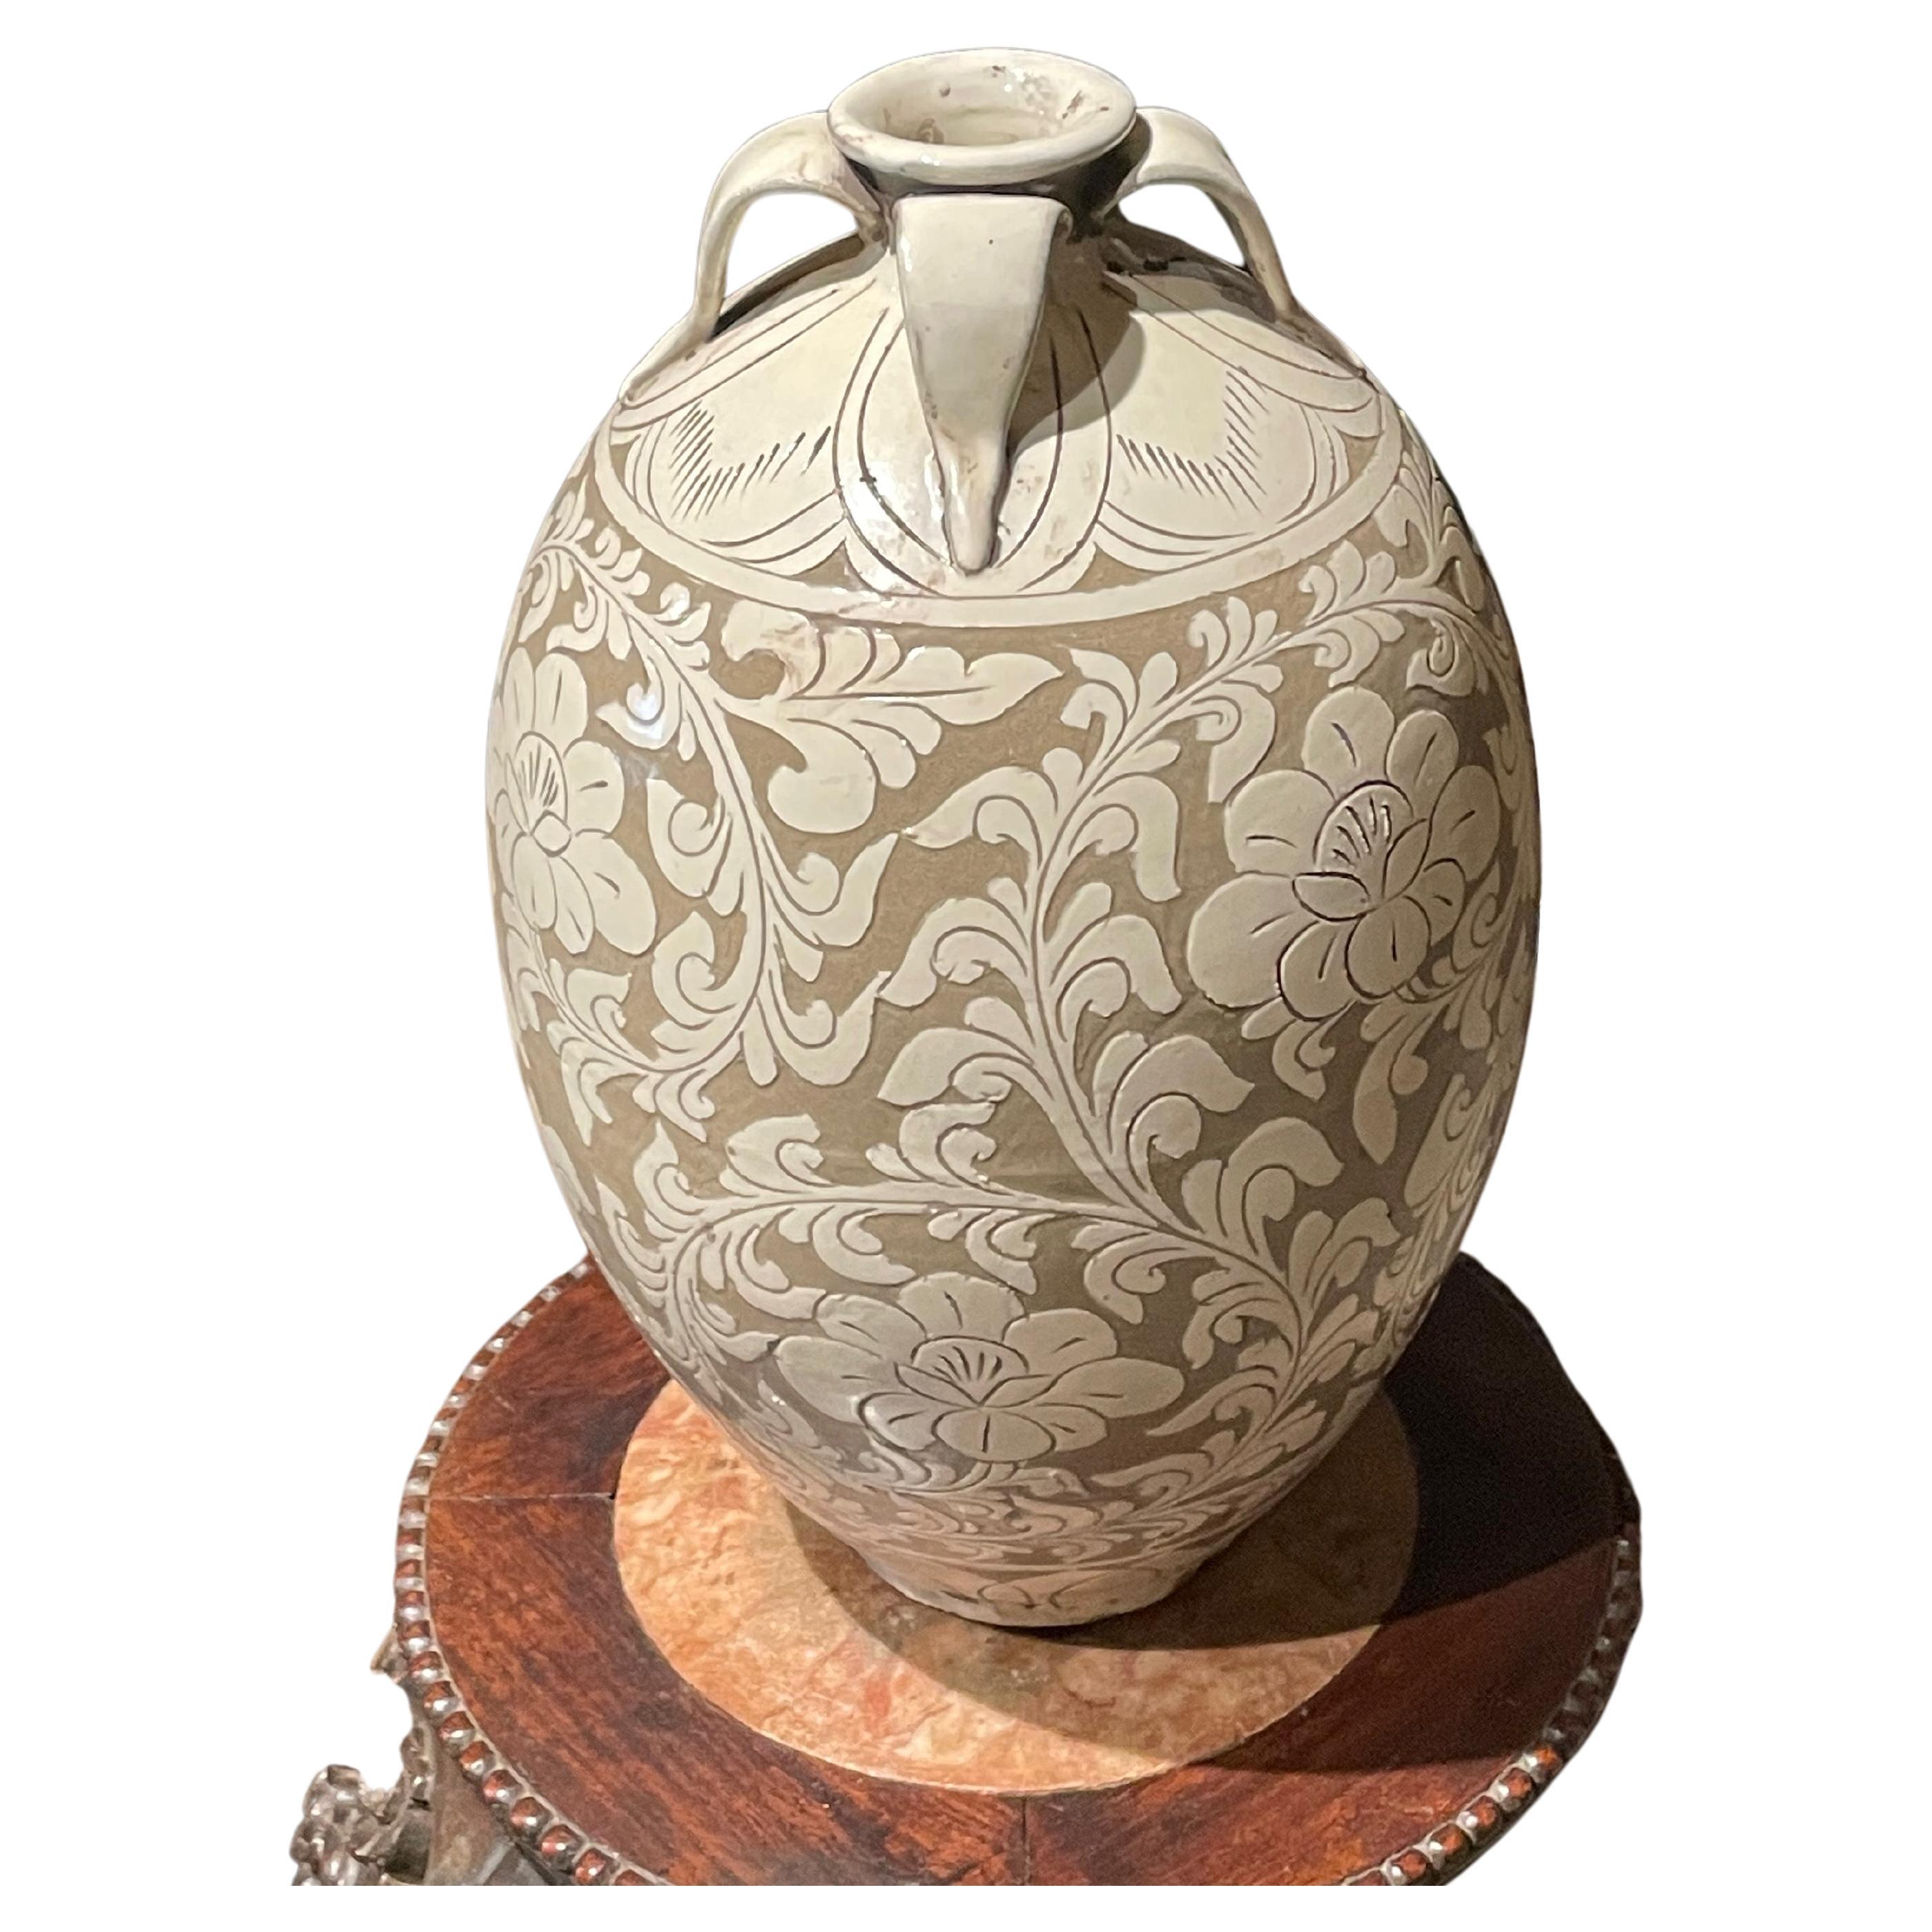 Motif chinois contemporain de couleur fauve avec un motif floral crème en surimpression.
Quatre petites poignées à l'ouverture.
Deux disponibles et vendus individuellement.